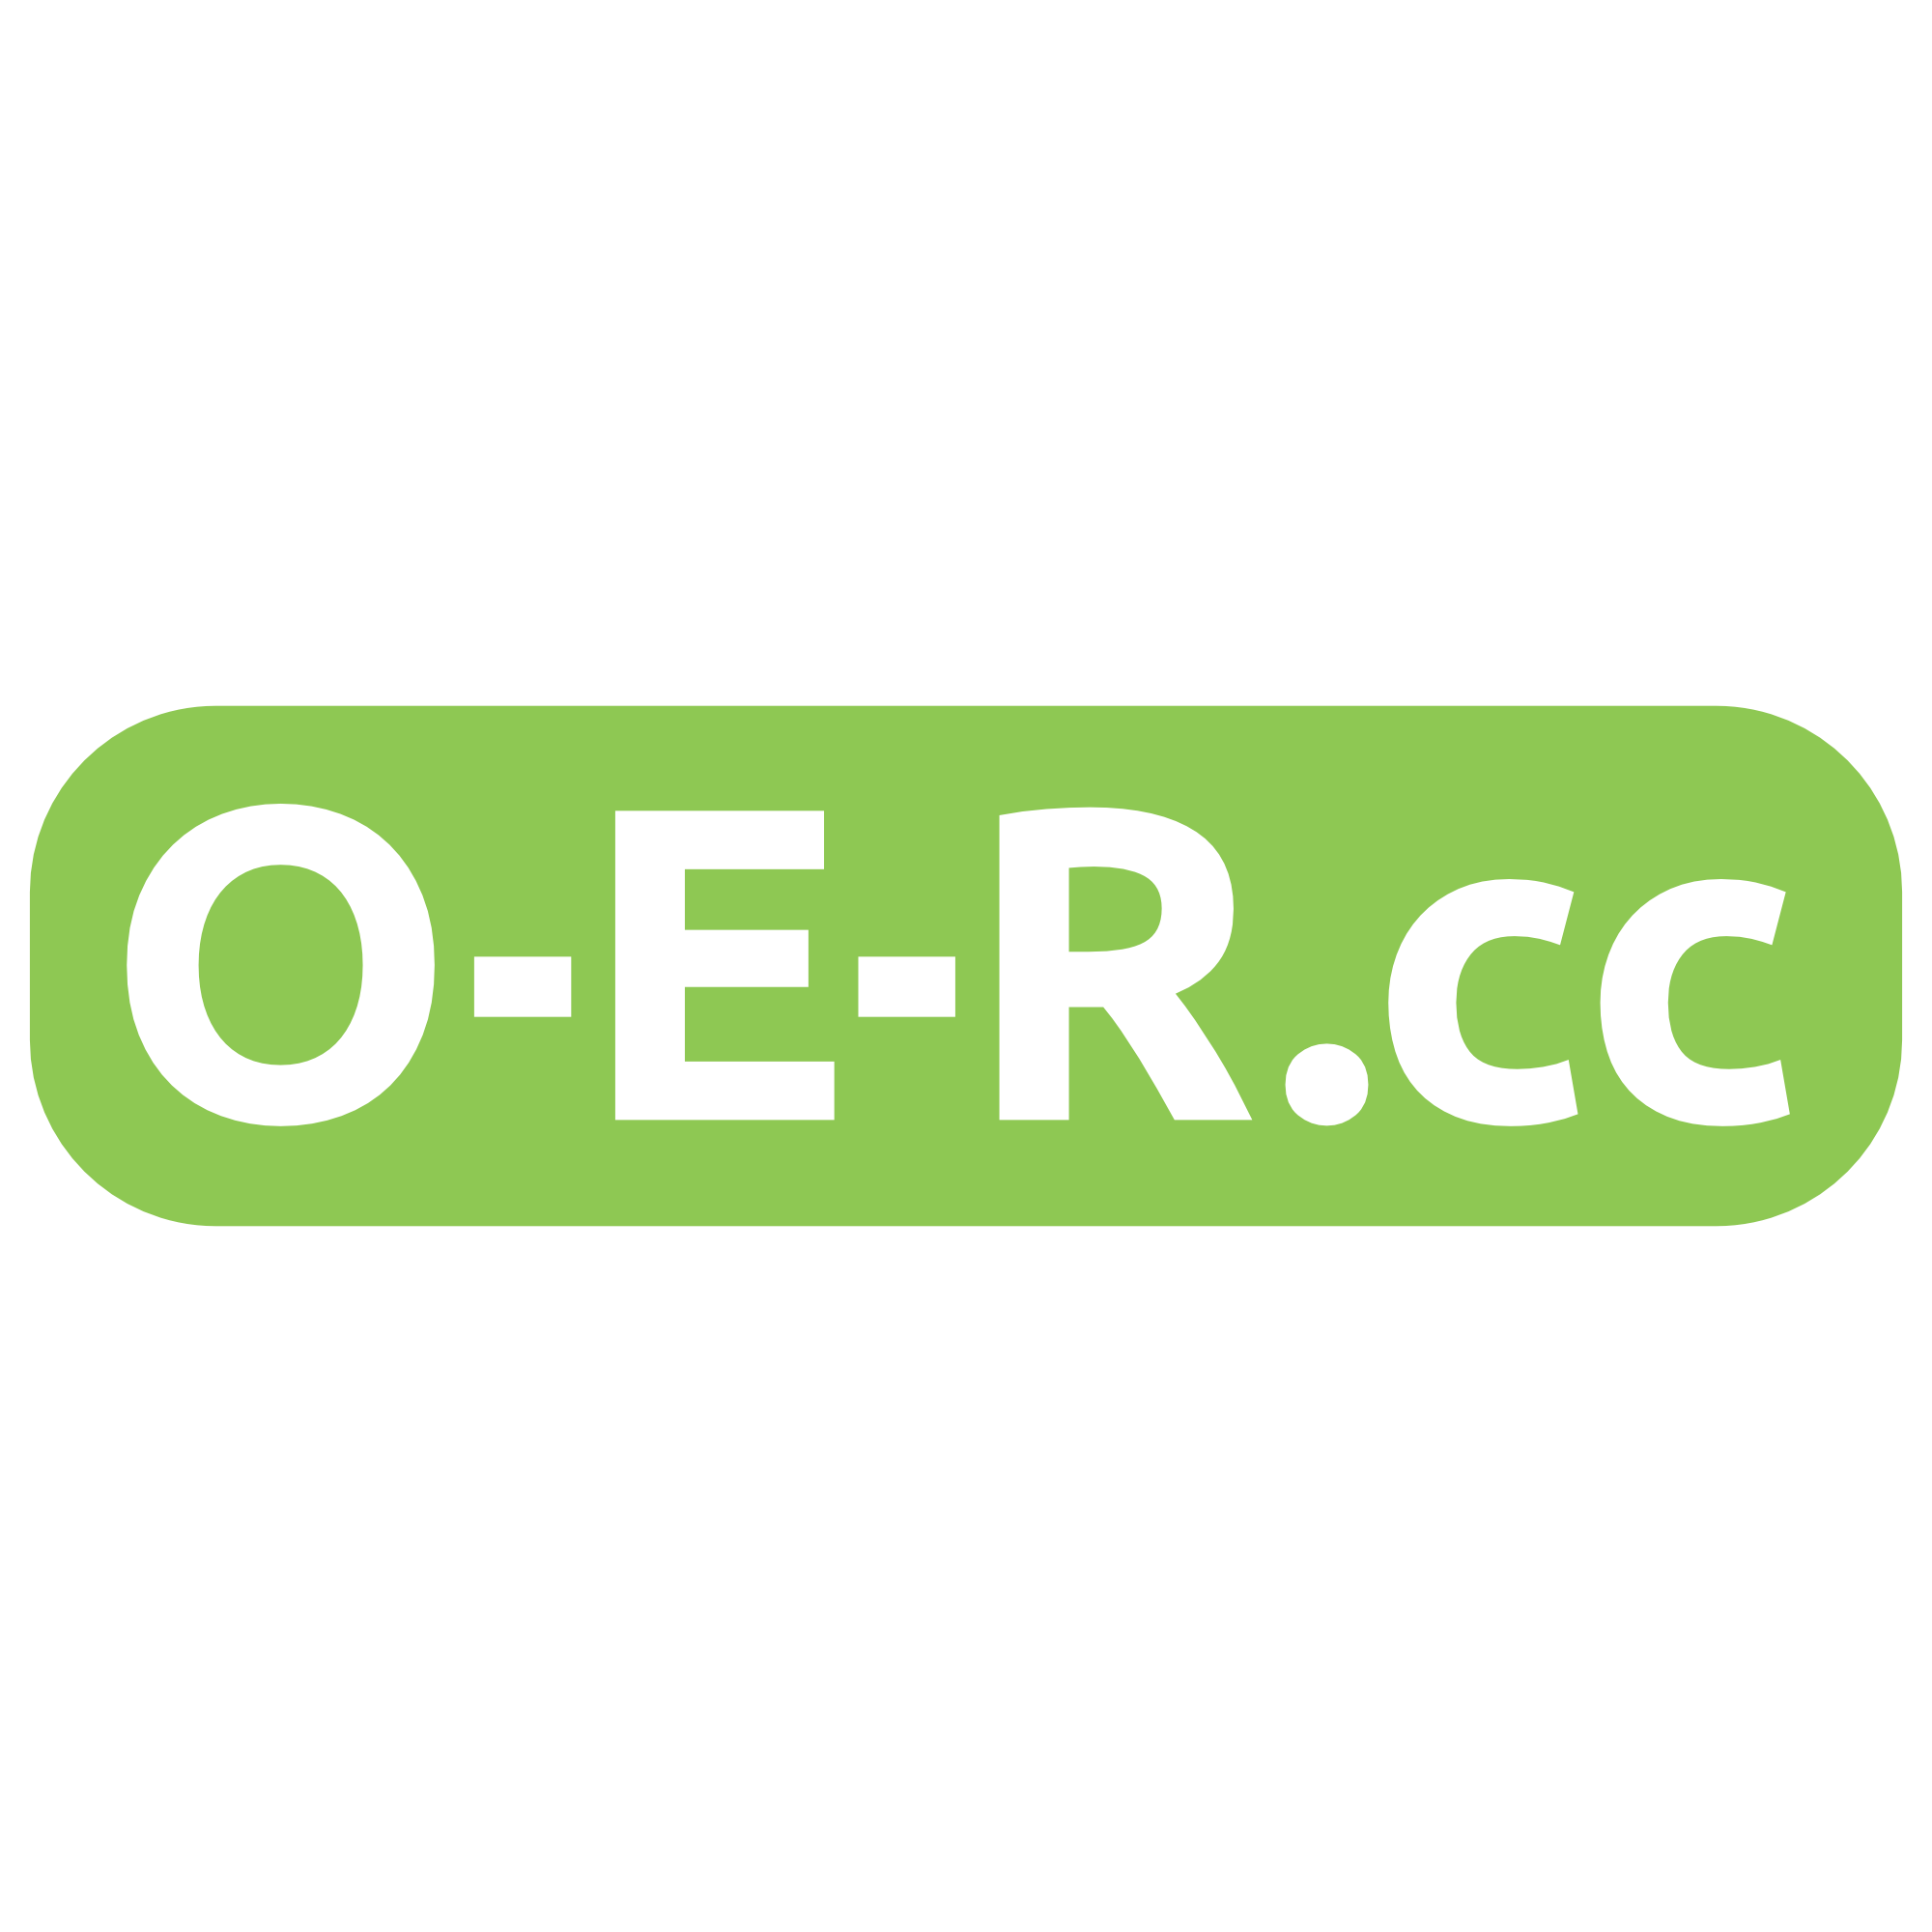 O-E-R.cc